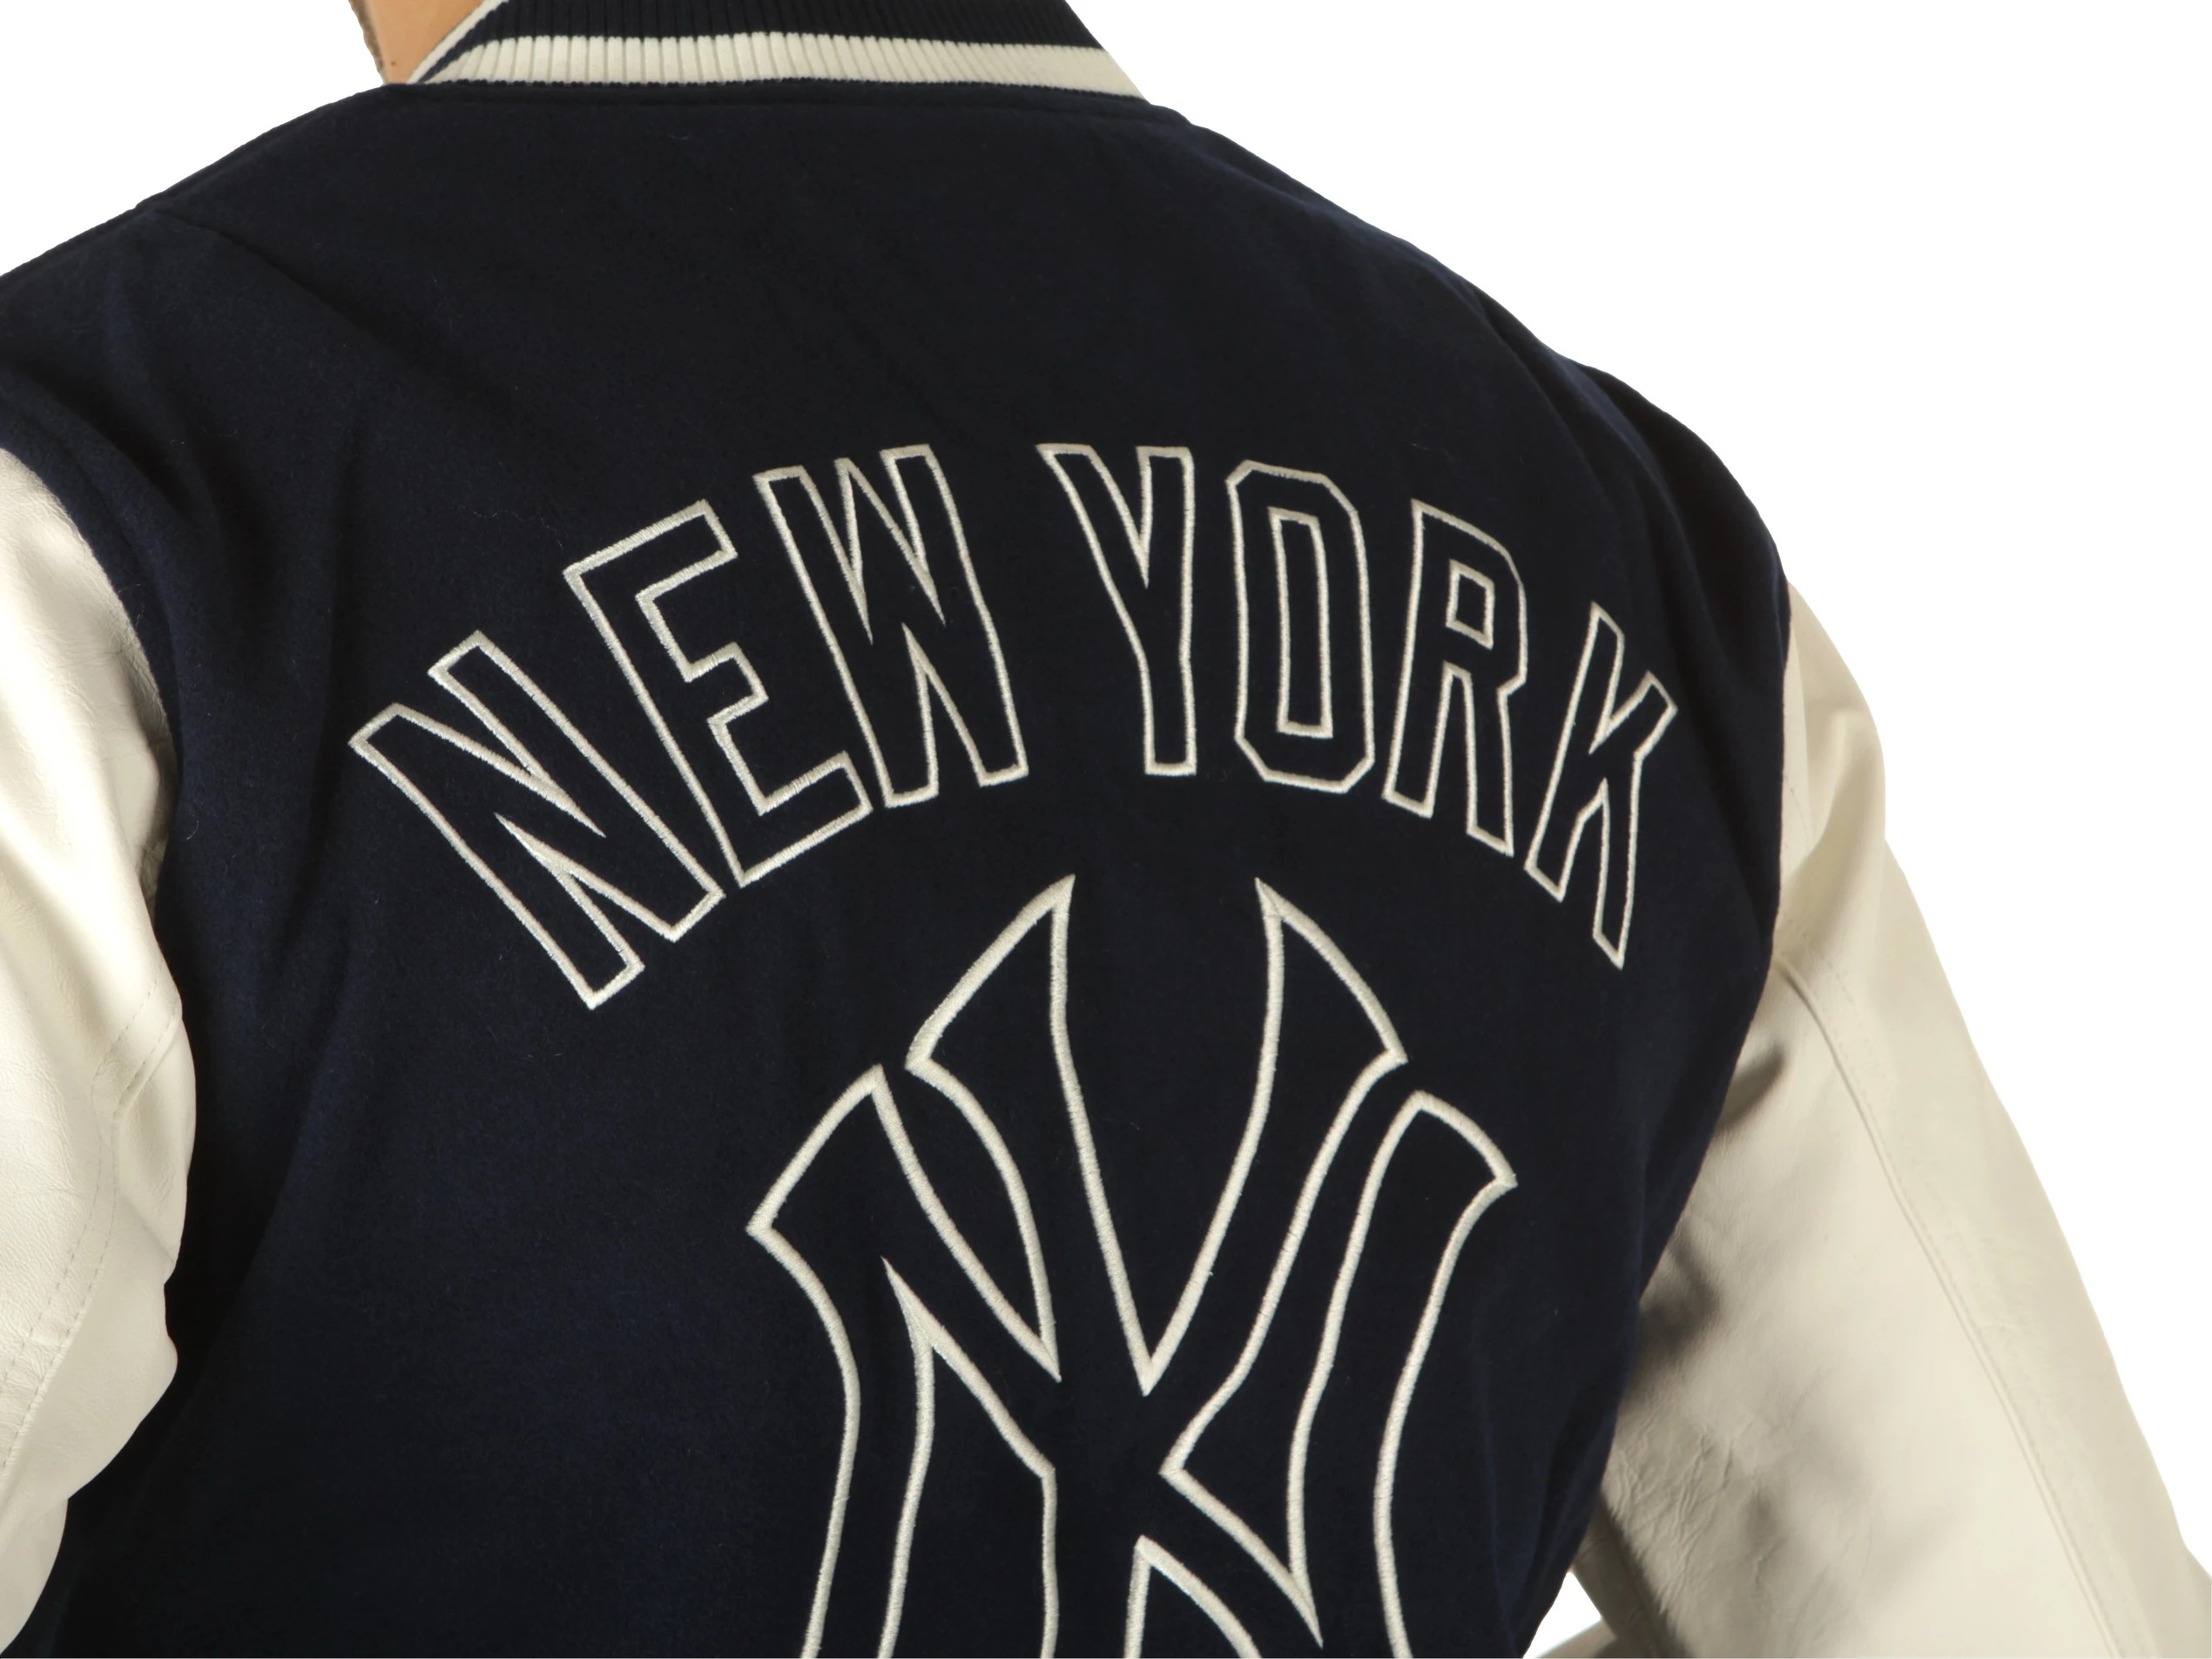 Jacket New Era New York Yankees Heritage Varsity Jacket 60332221